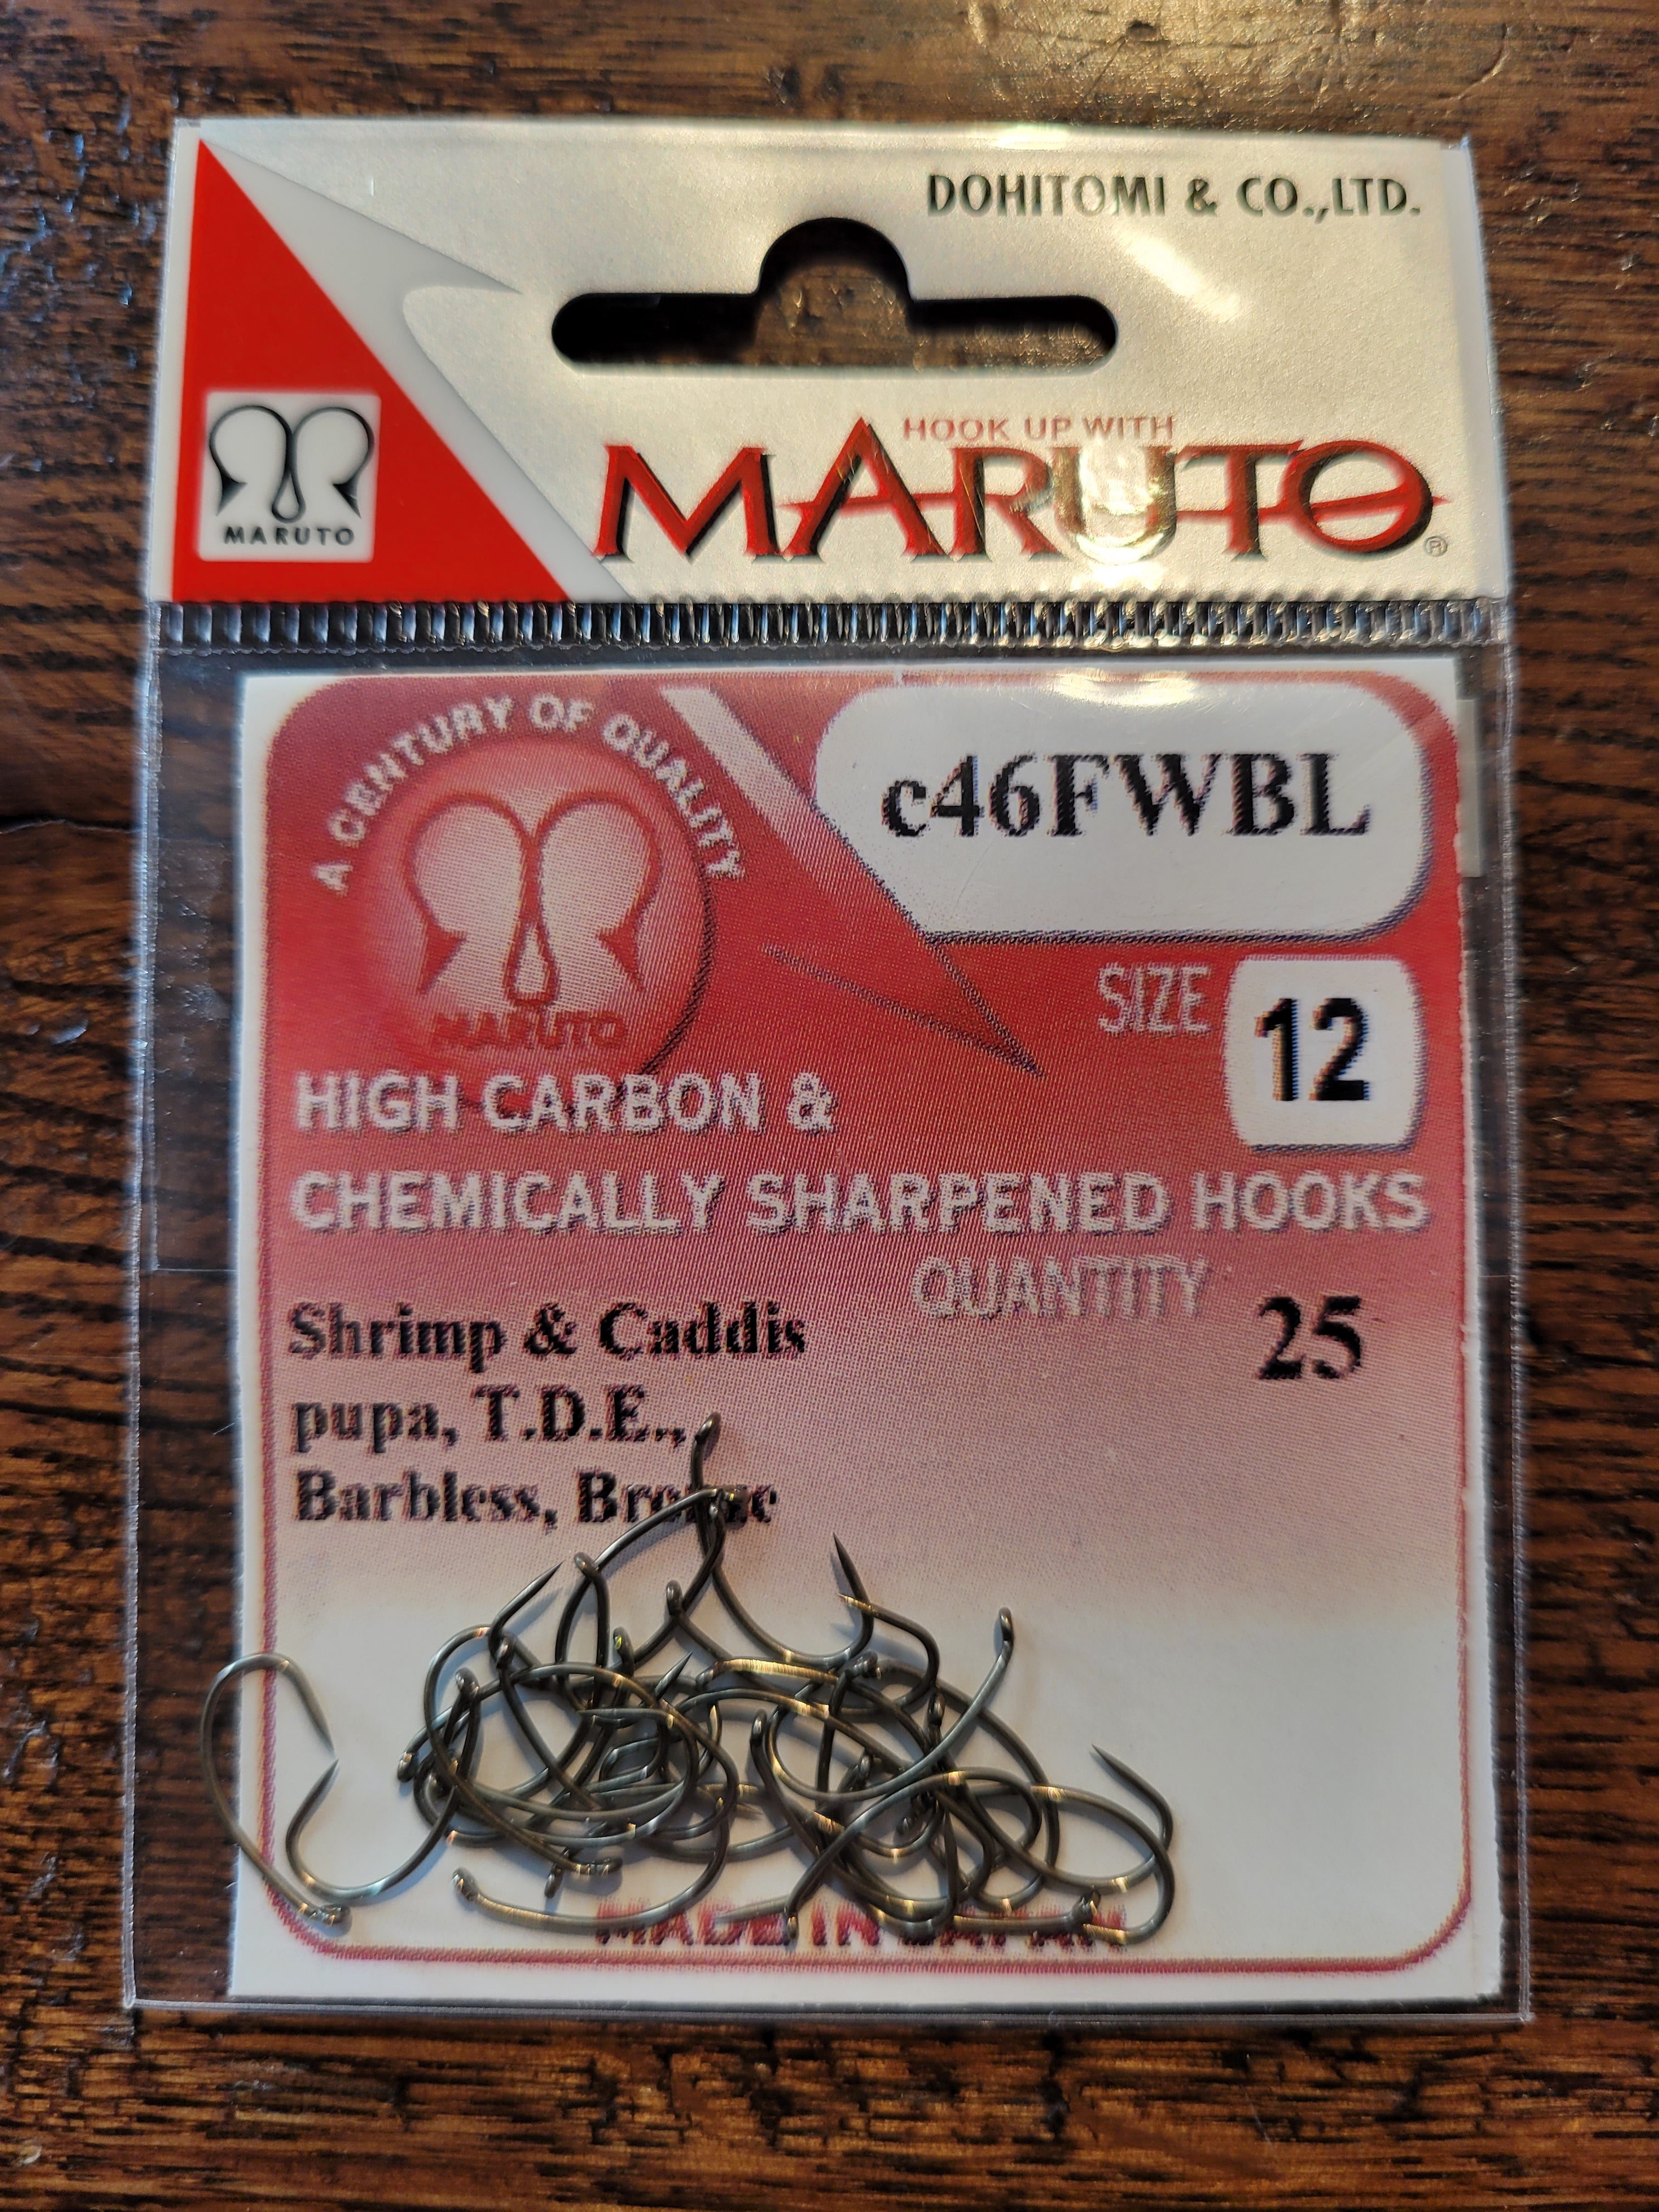 Maruto C46FWBL Hooks